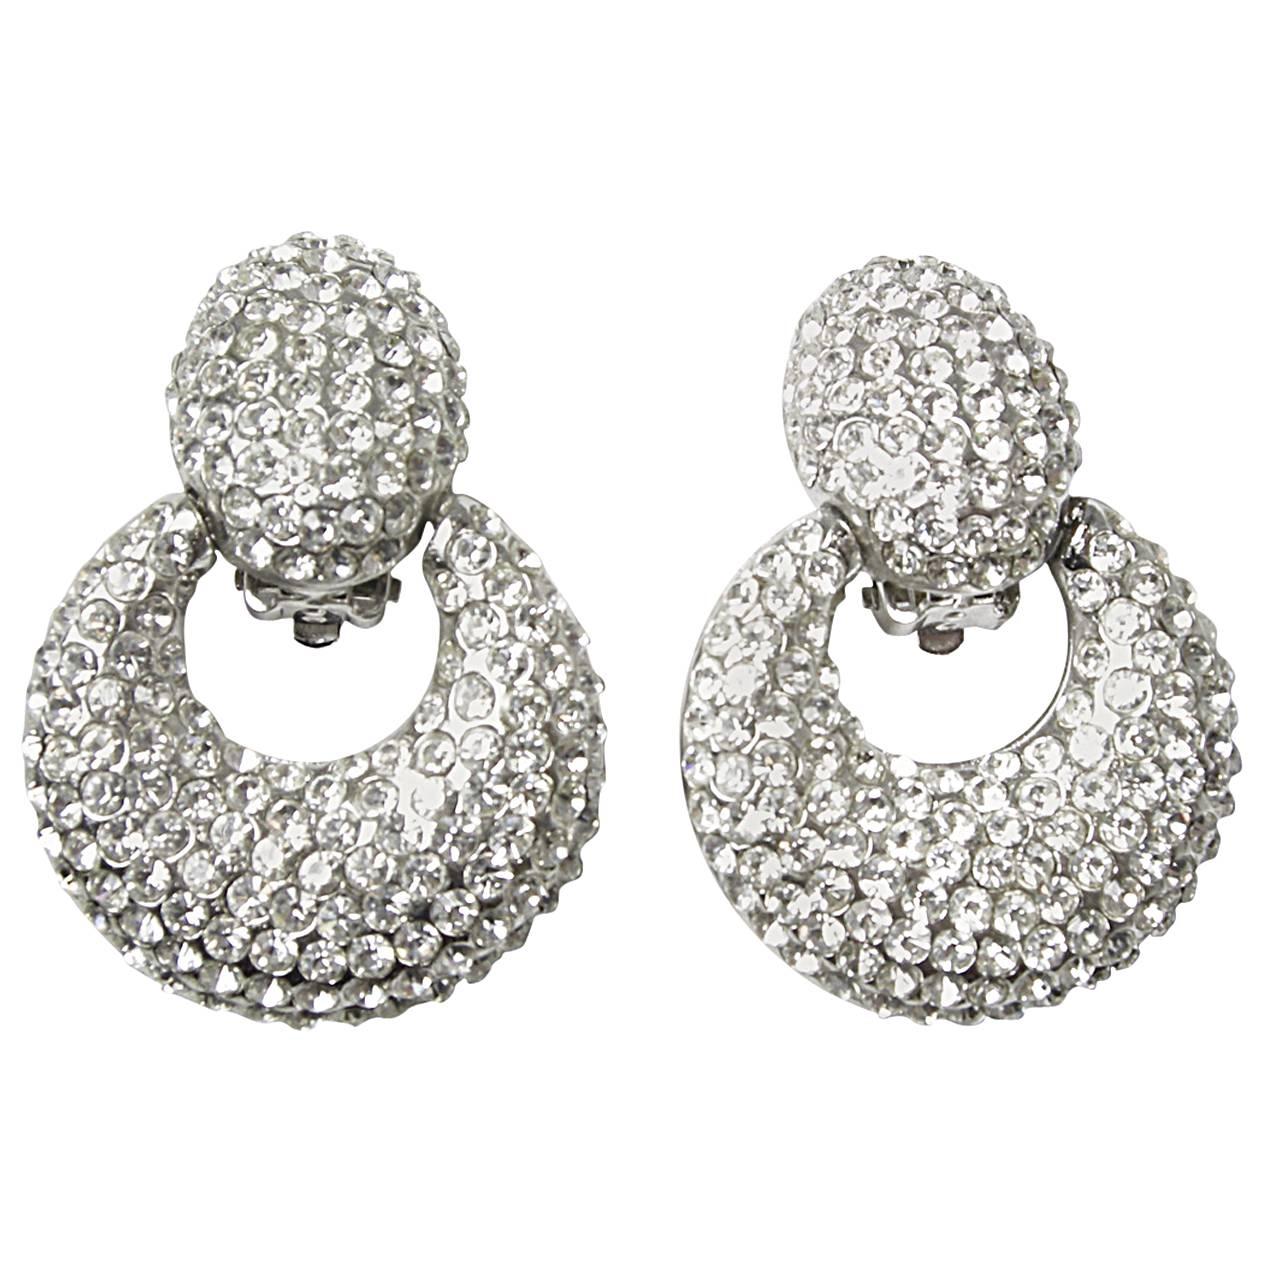 intage Sterling Silver Signed Jarin Couture Crystal Doorknocker Runway Earrings